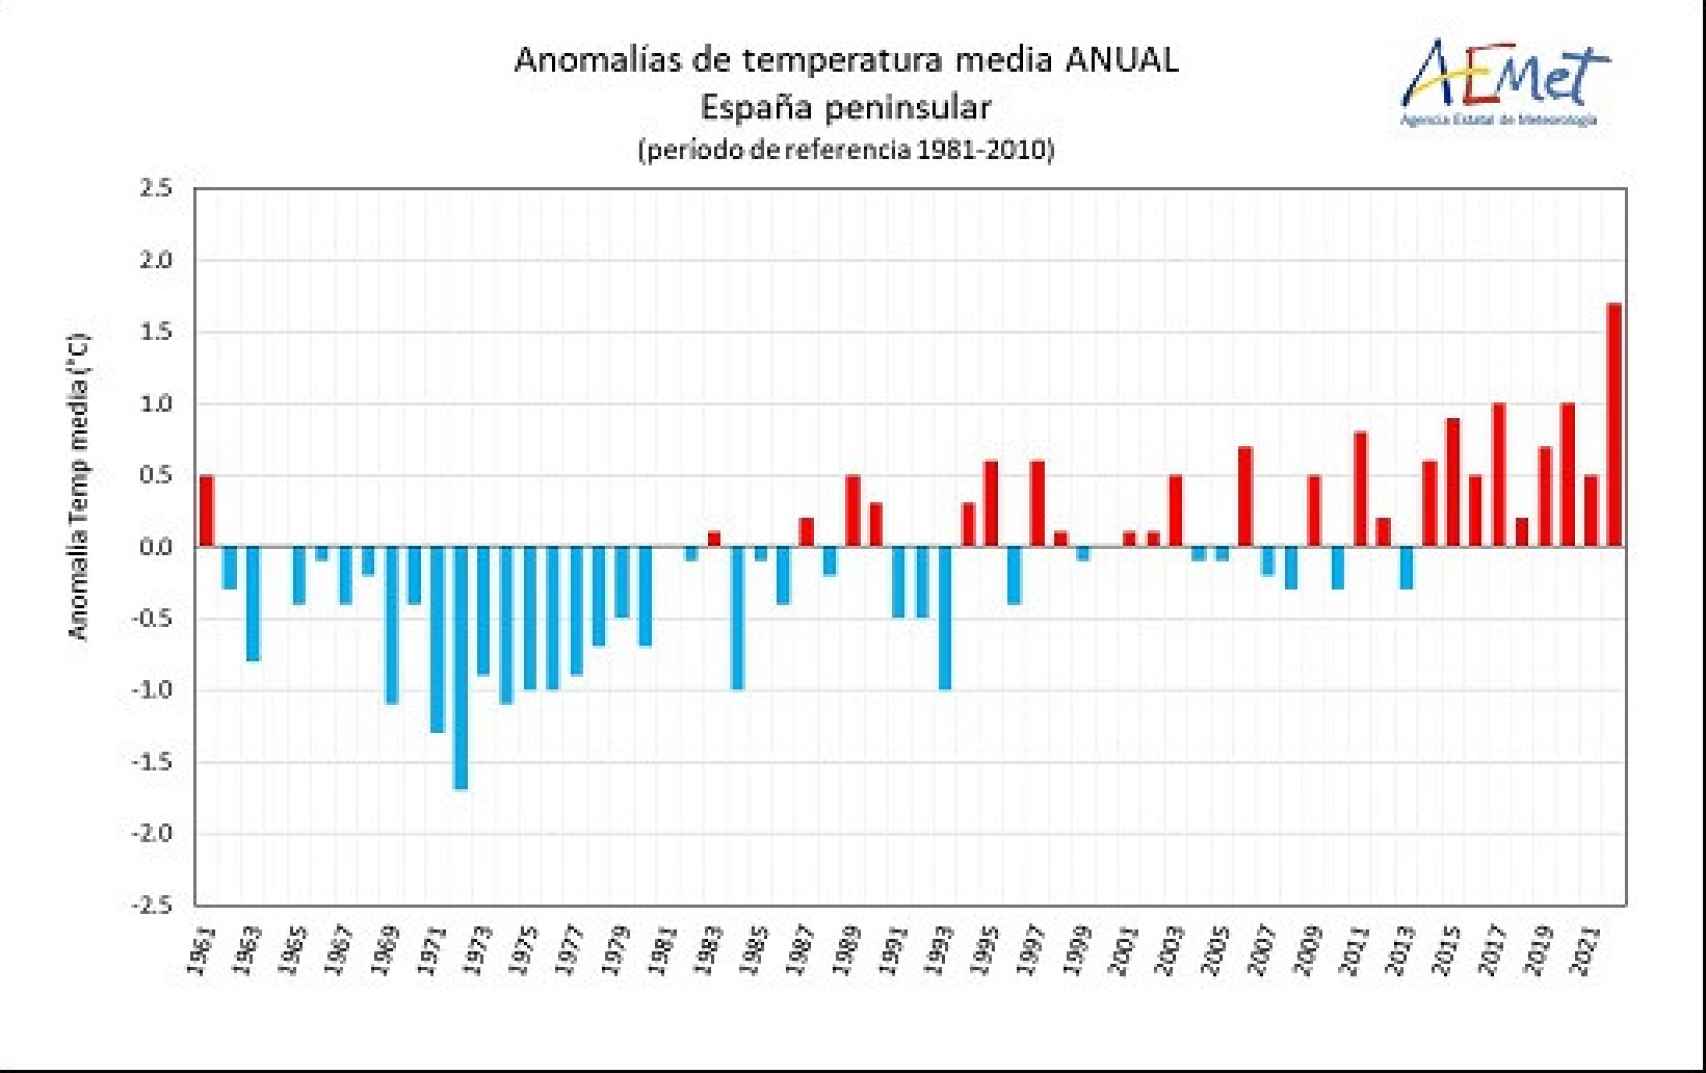 Serie de anomalías de la temperatura media anual en la España peninsular desde 1961 (Periodo de referencia 1981-2010).